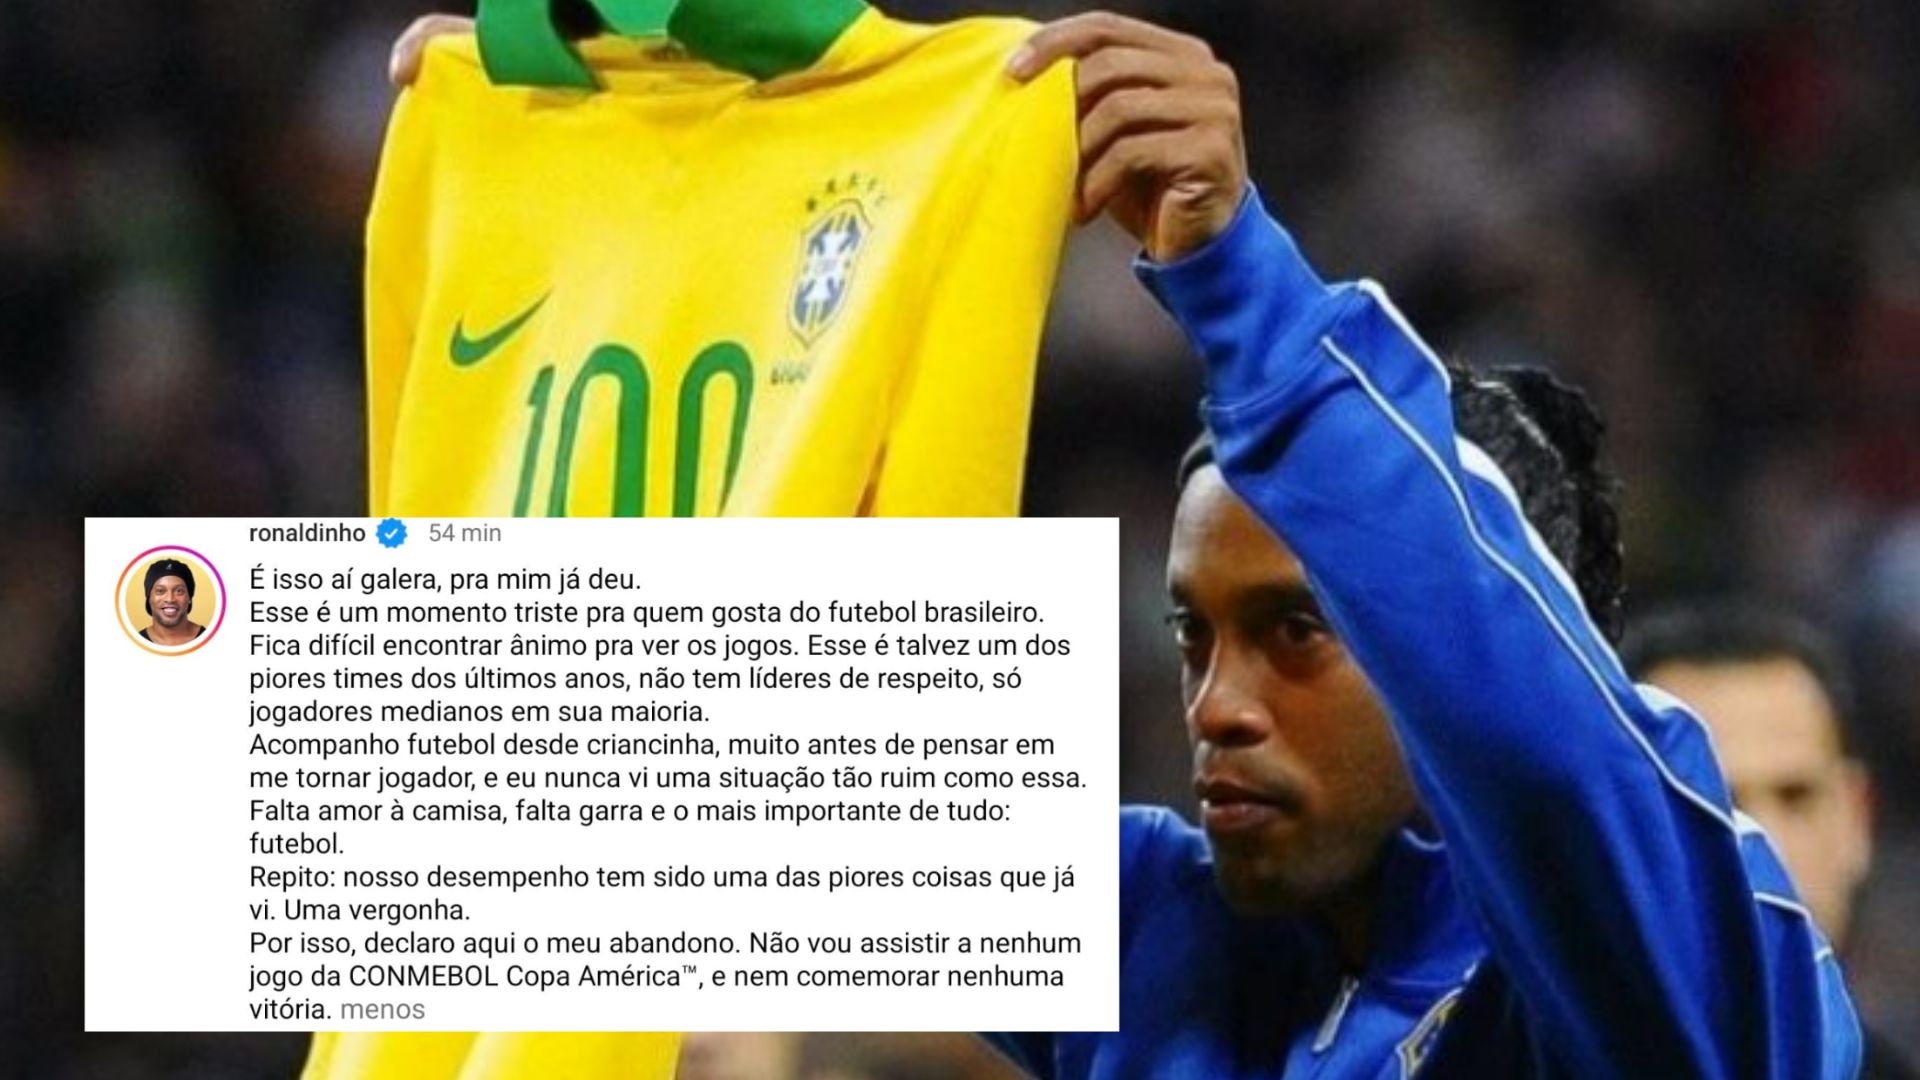 "Um dos piores times dos últimos anos", diz RONALDINHO sobre a seleção brasileira